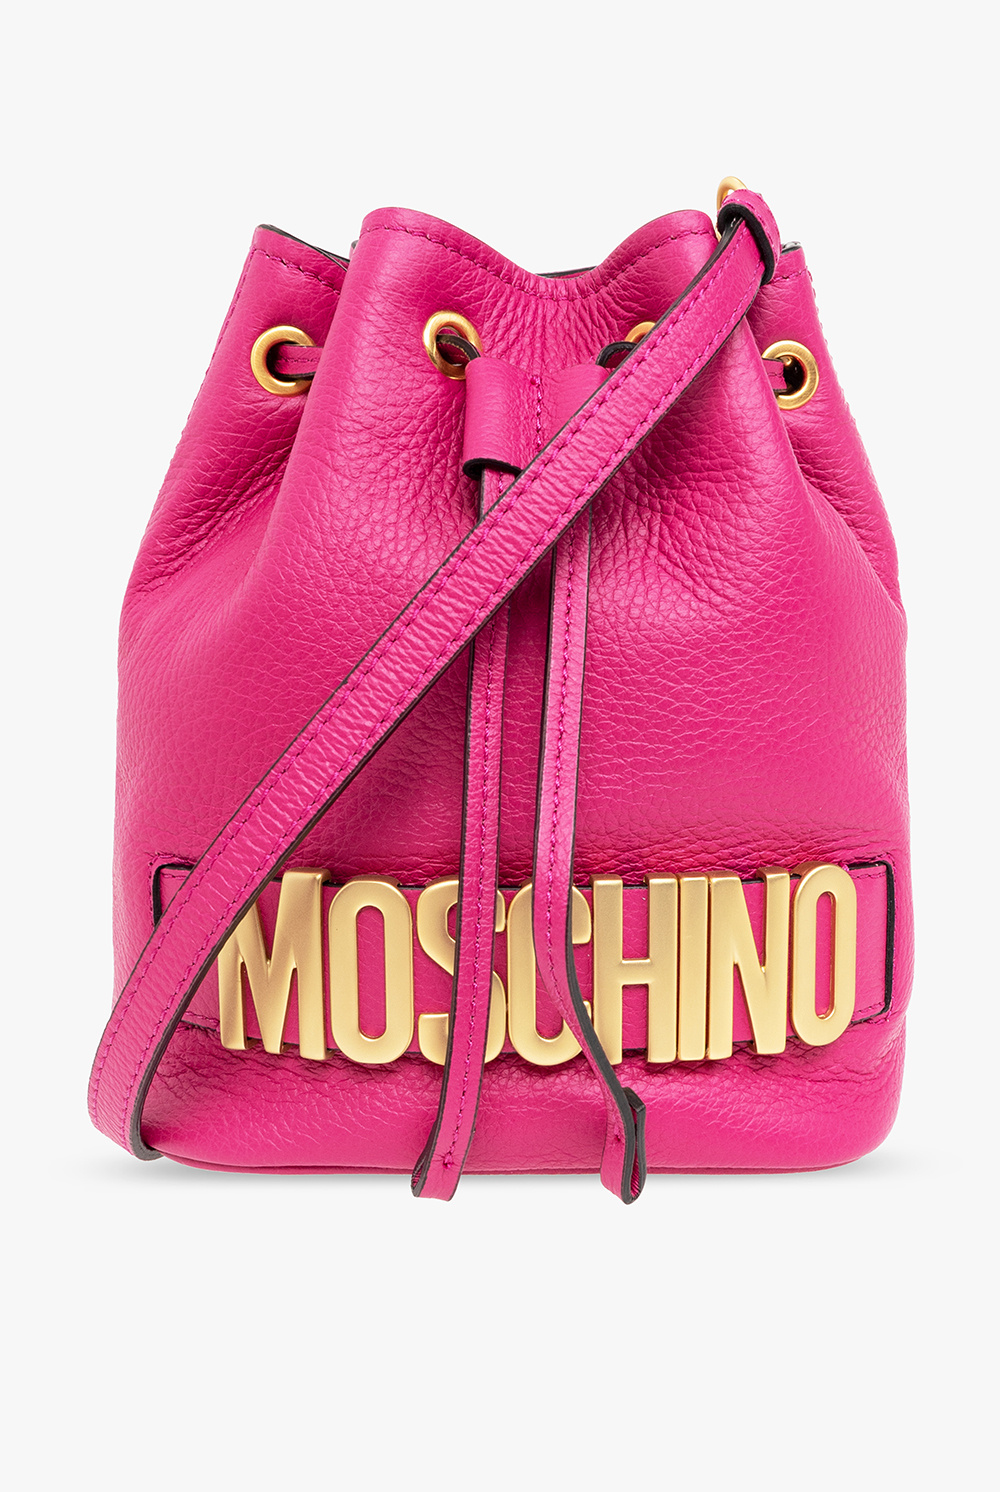 Moschino Leather bucket bag